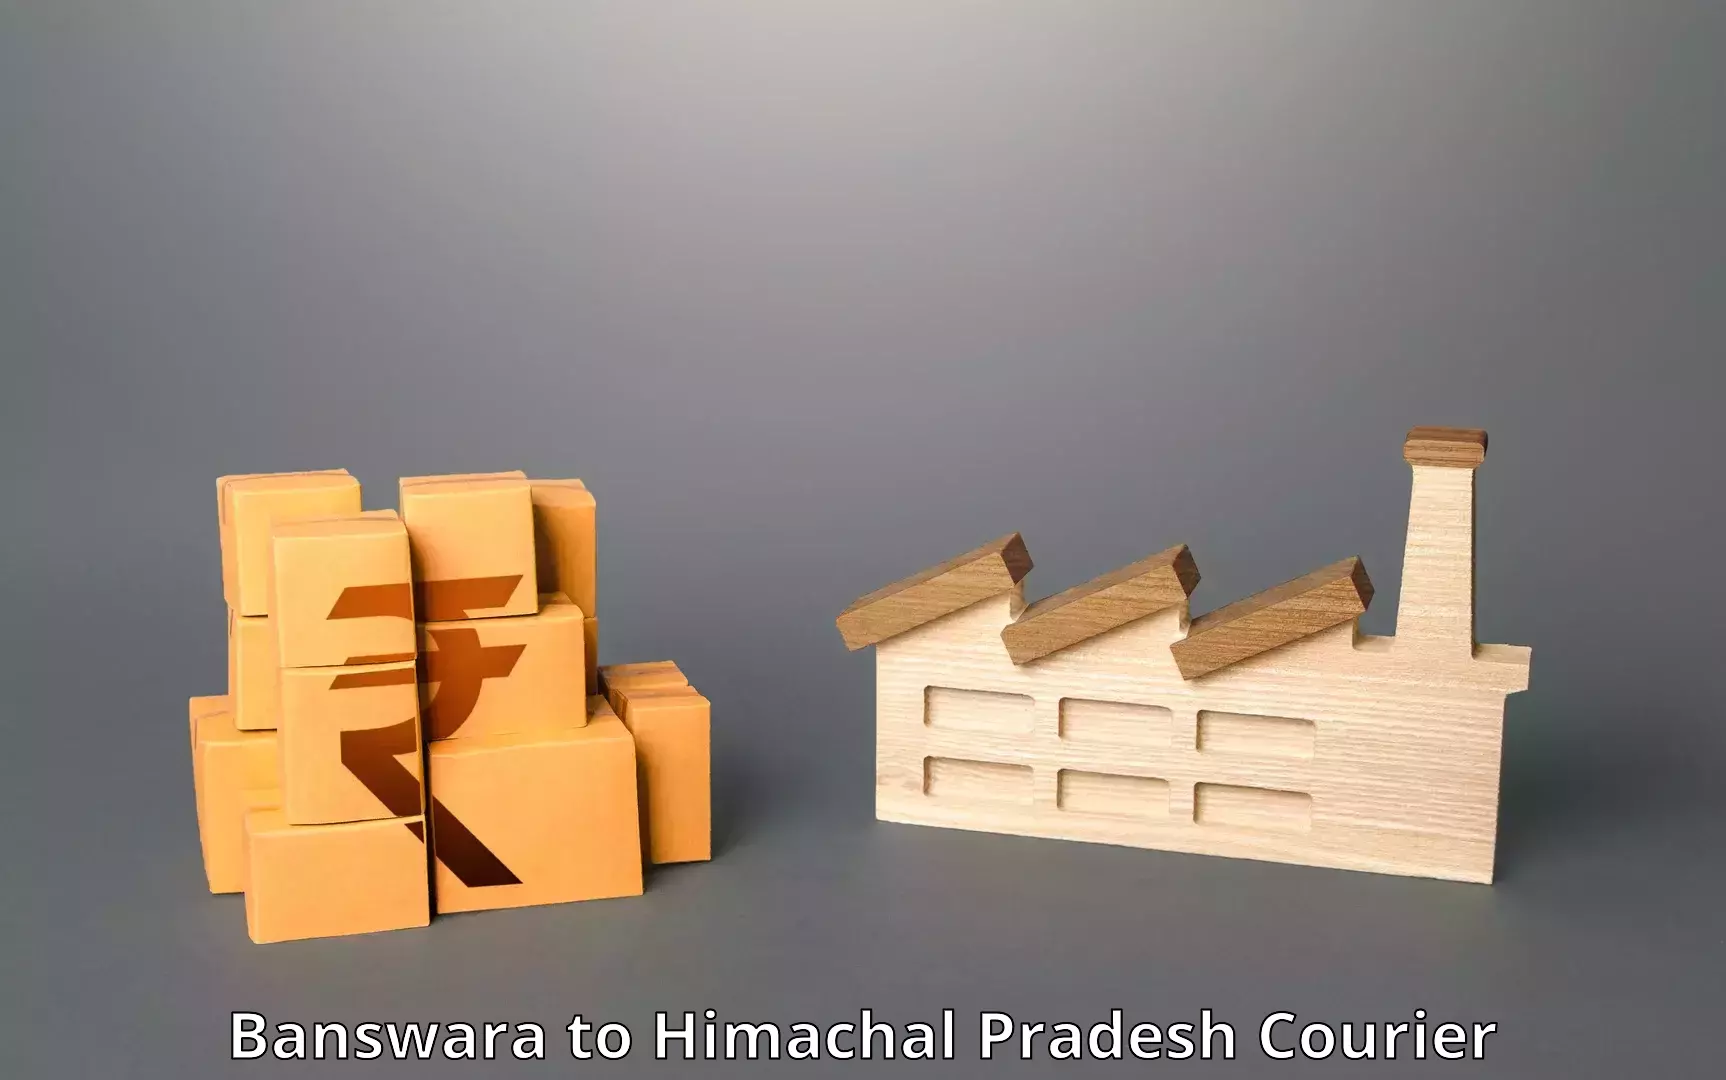 Flexible delivery schedules in Banswara to Una Himachal Pradesh